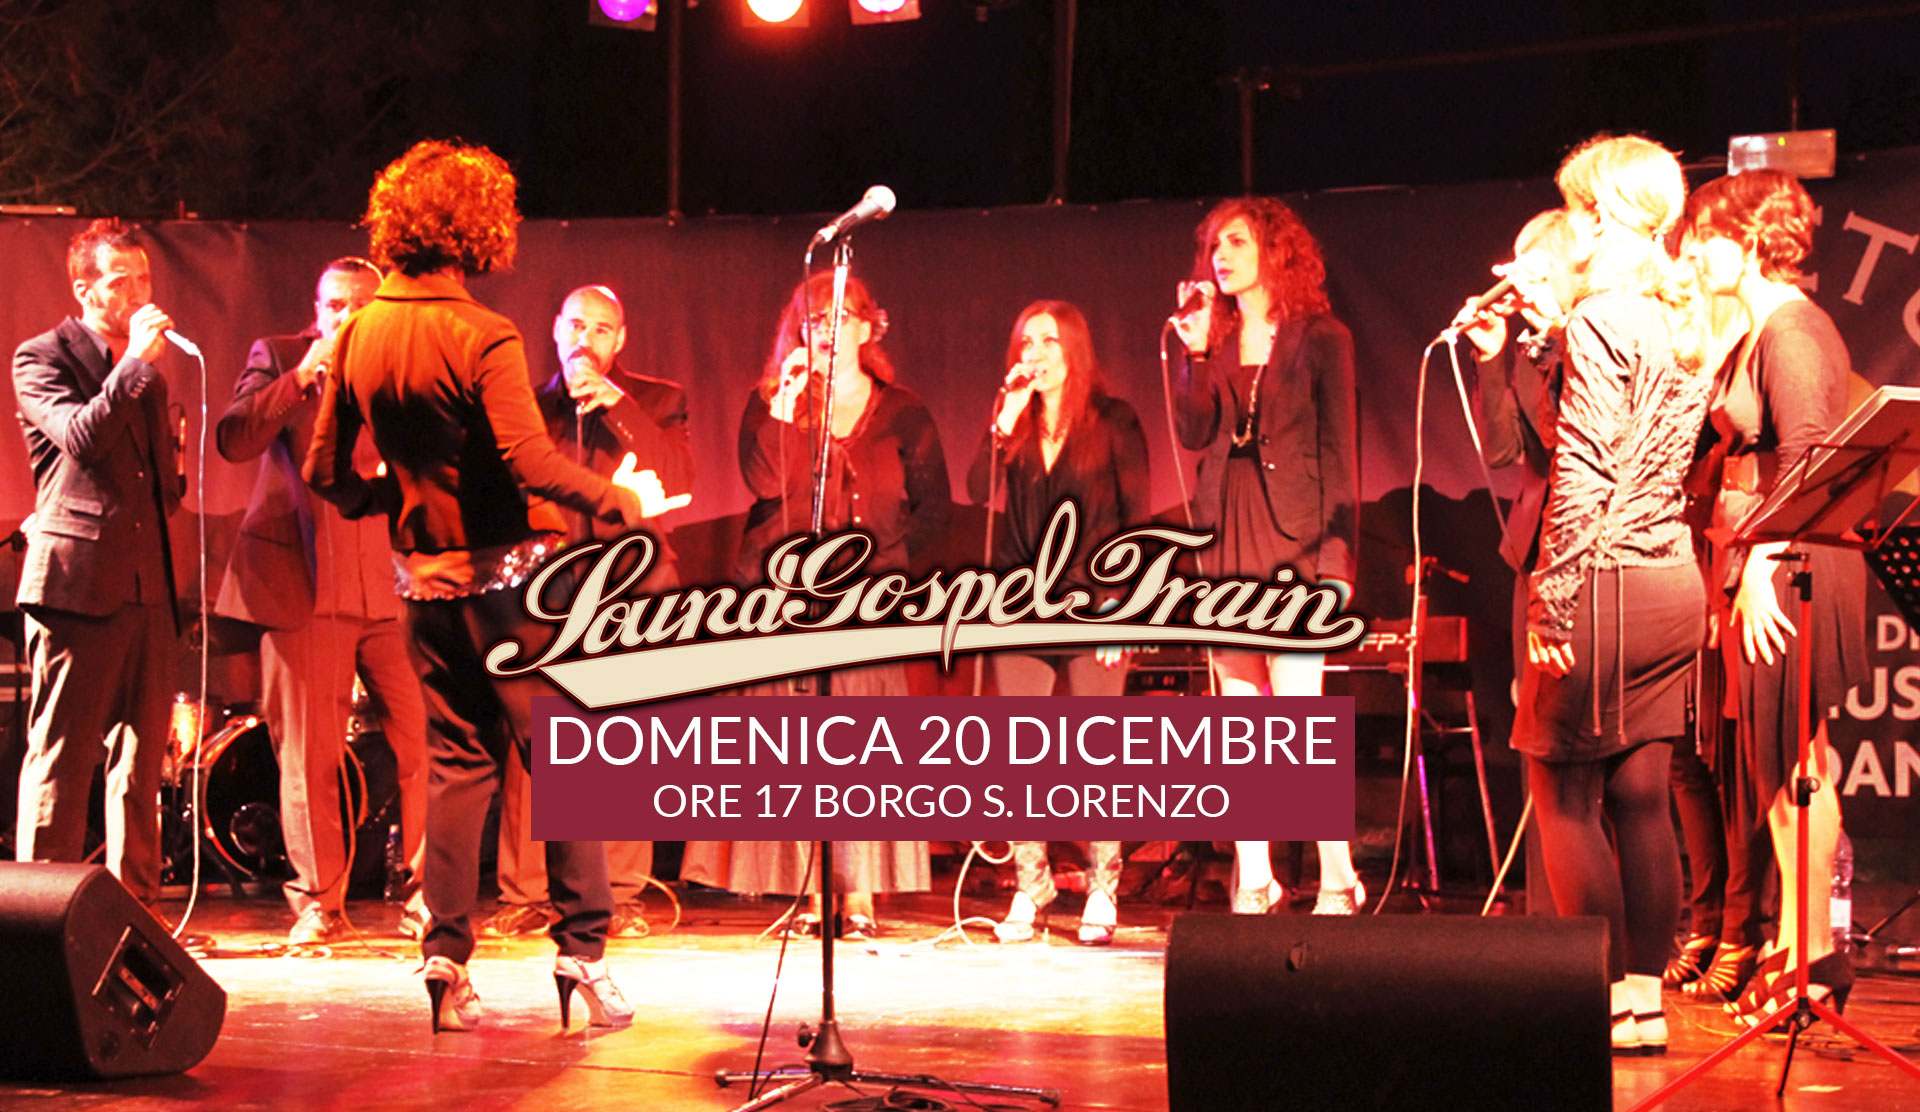 SoundGospelTrain live@Borgo S. Lorenzo 20 Dicembre ore 17